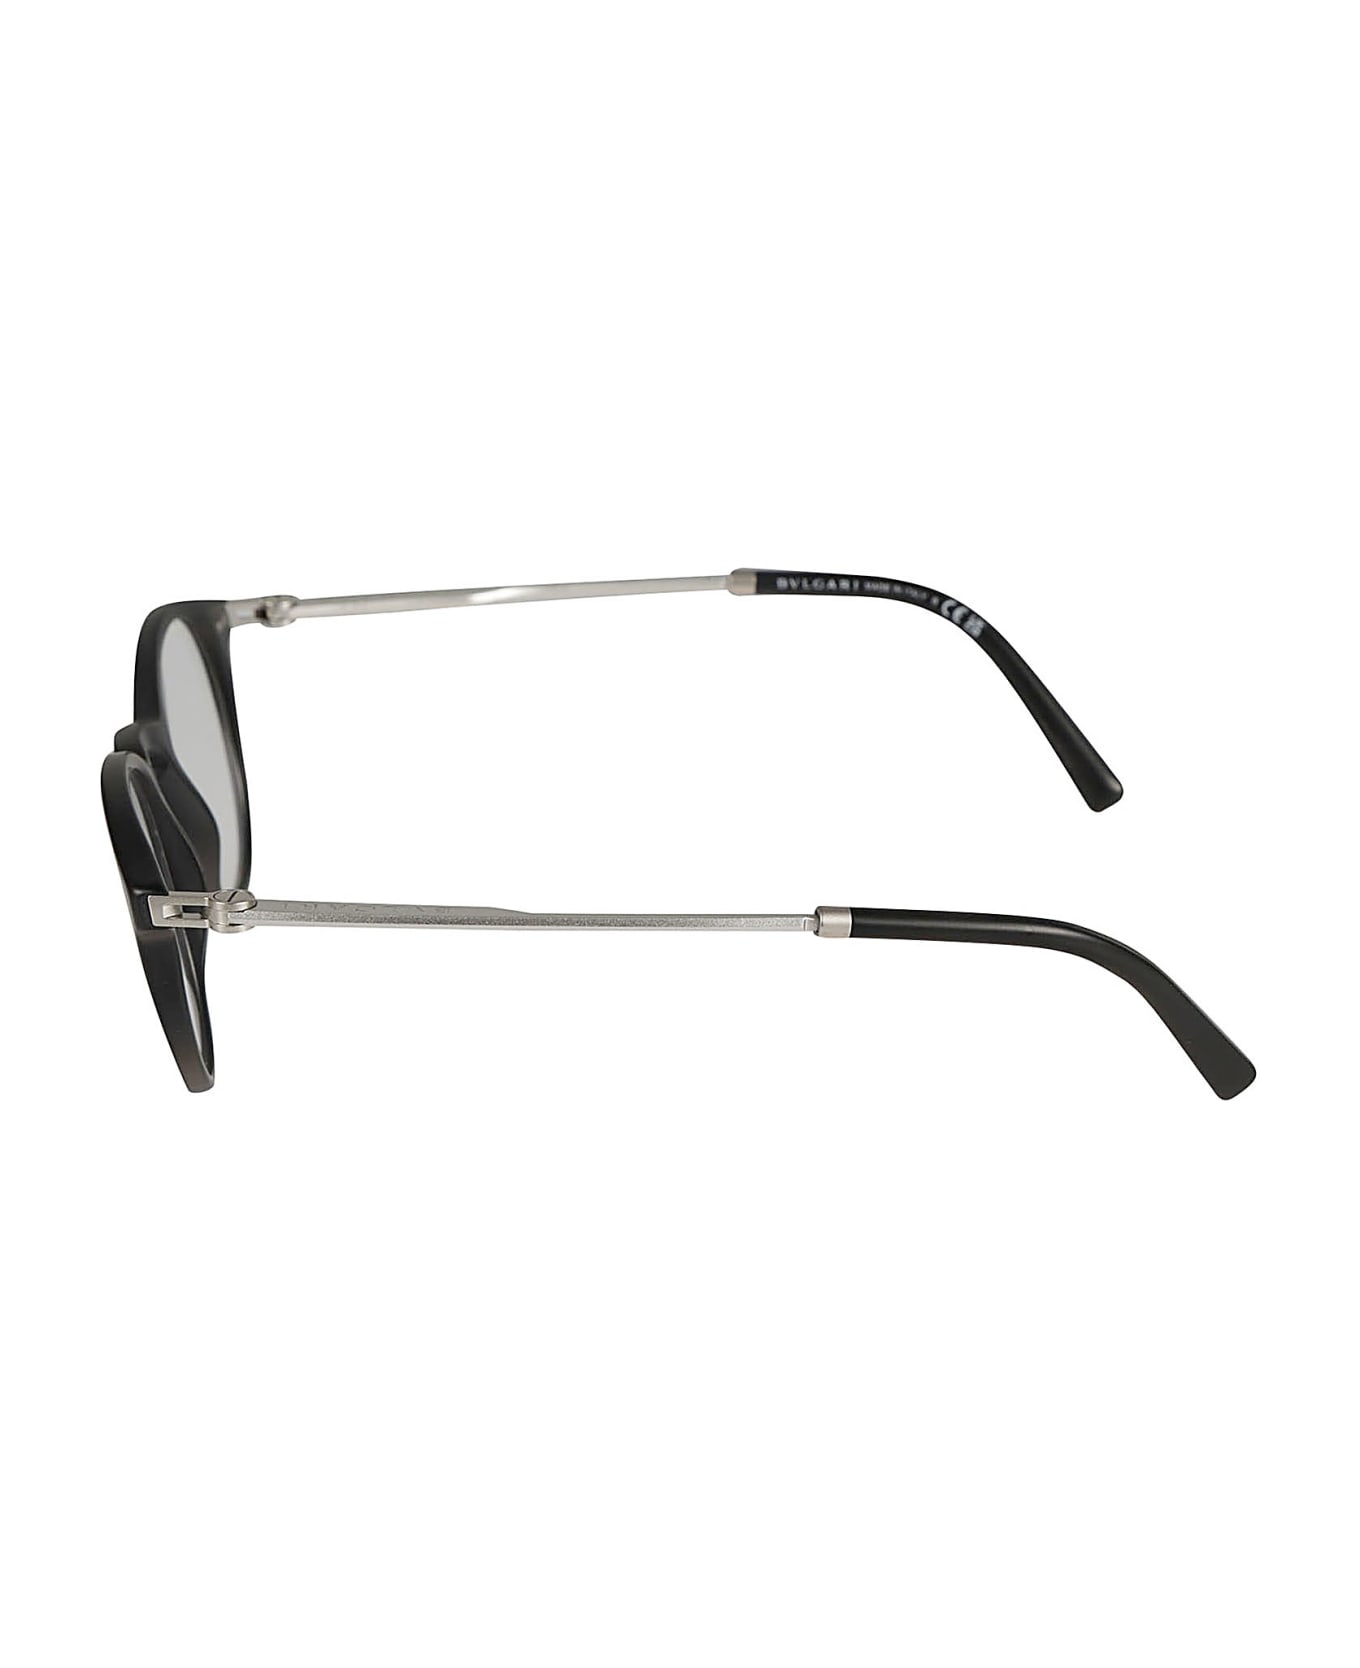 Bulgari Round Rim Glasses - 5313